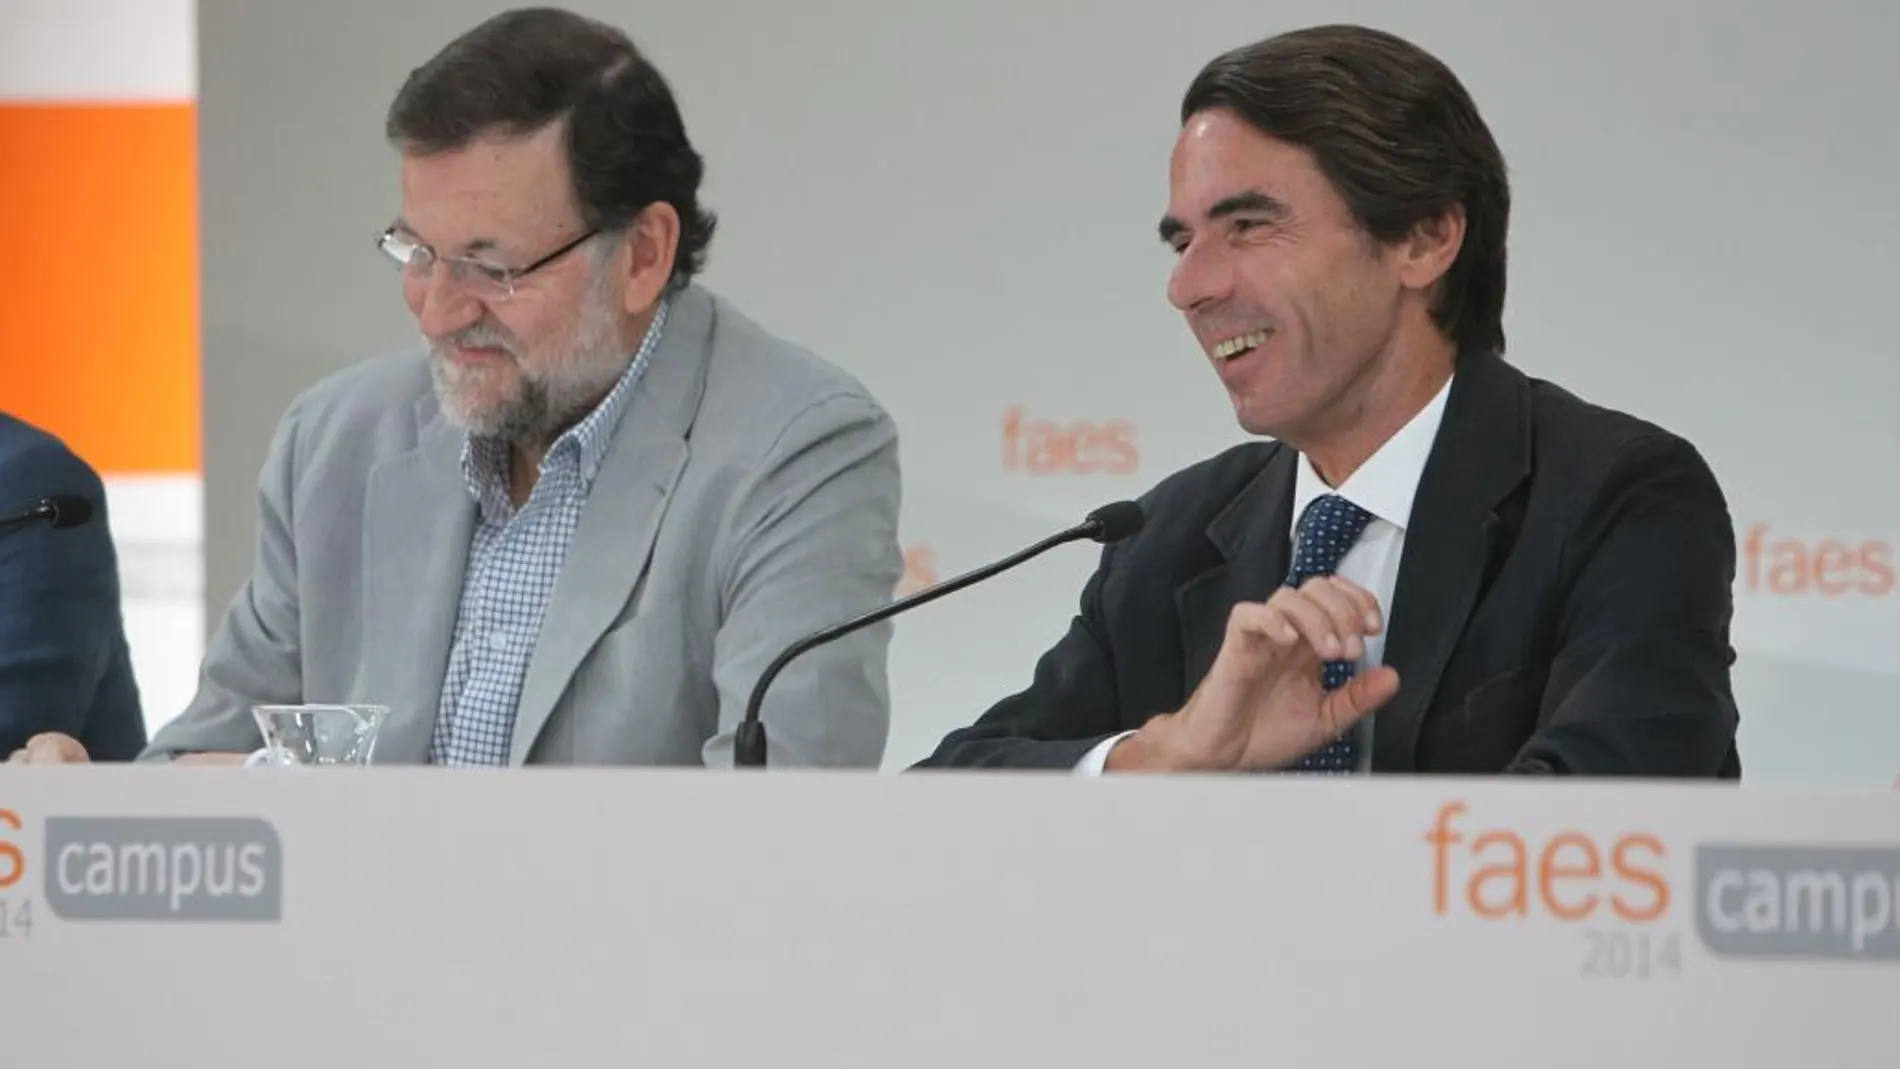 El presidente del Gobierno, Mariano Rajoy (i), tras la clausura hoy el Campus FAES 2014 junto al presidente de esta fundación, José María Aznar (d).